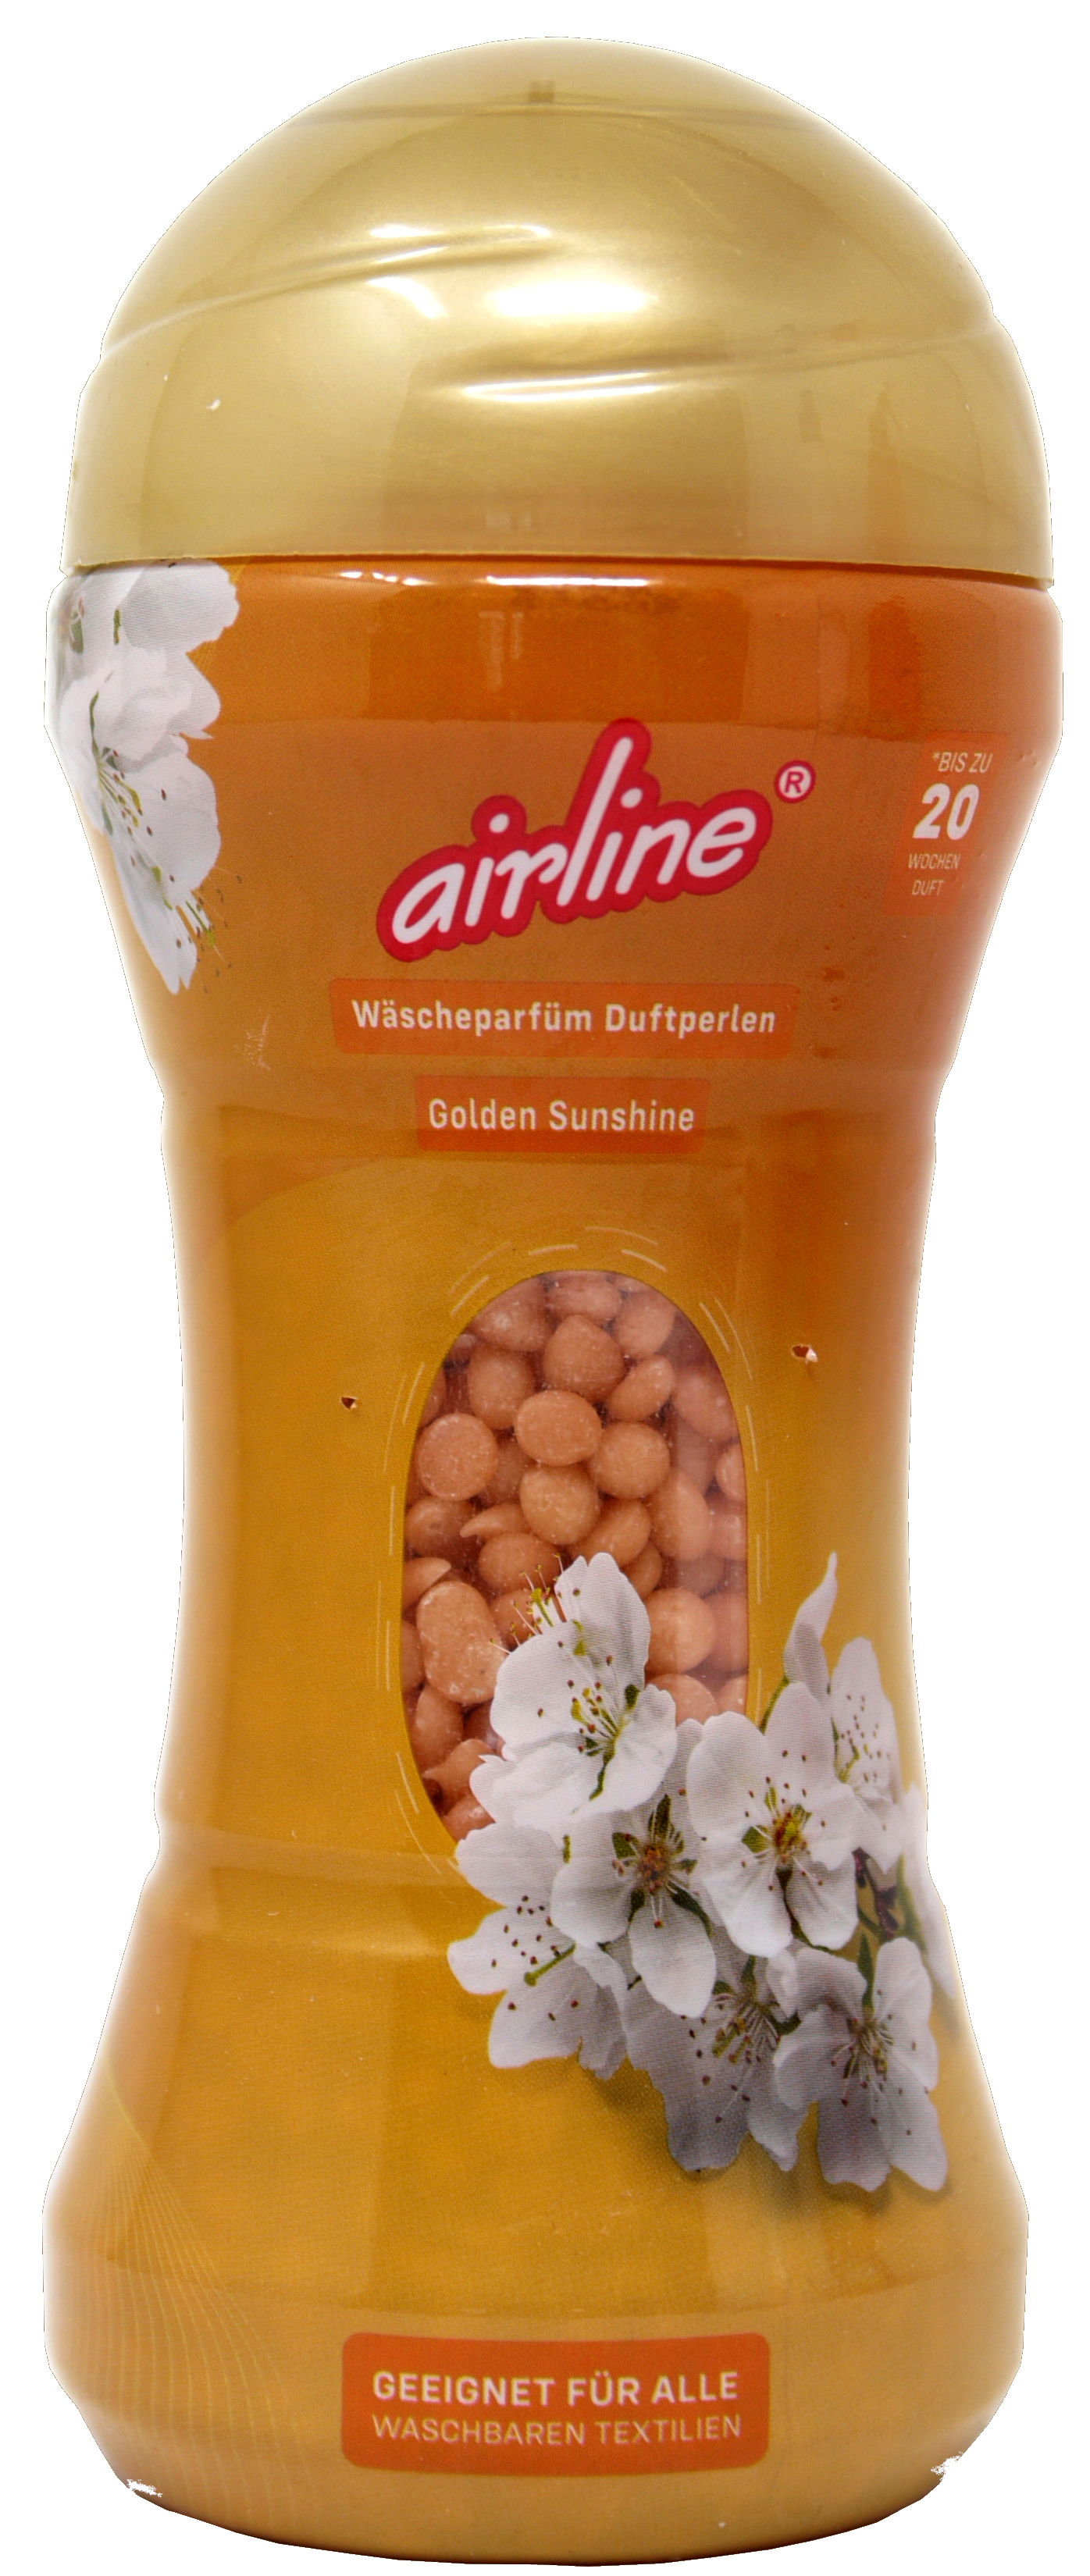 00472 - airline Wäscheparfüm Duftperlen 225g Golden Sunshine